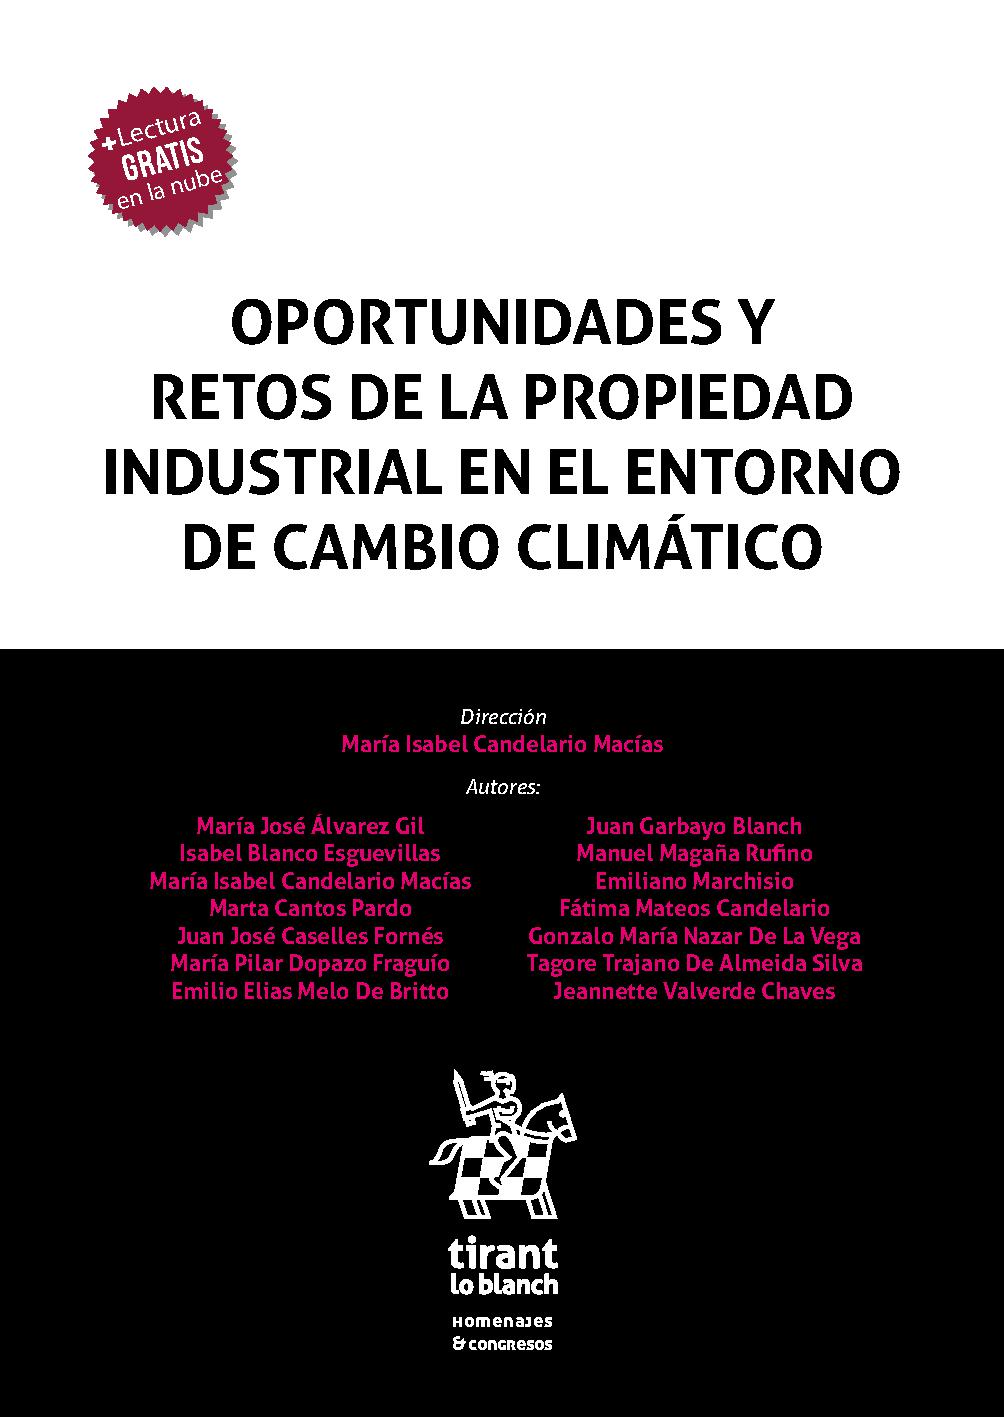 Imagen de portada del libro Oportunidades y retos de la Propiedad Industrial en el entorno de cambio climático